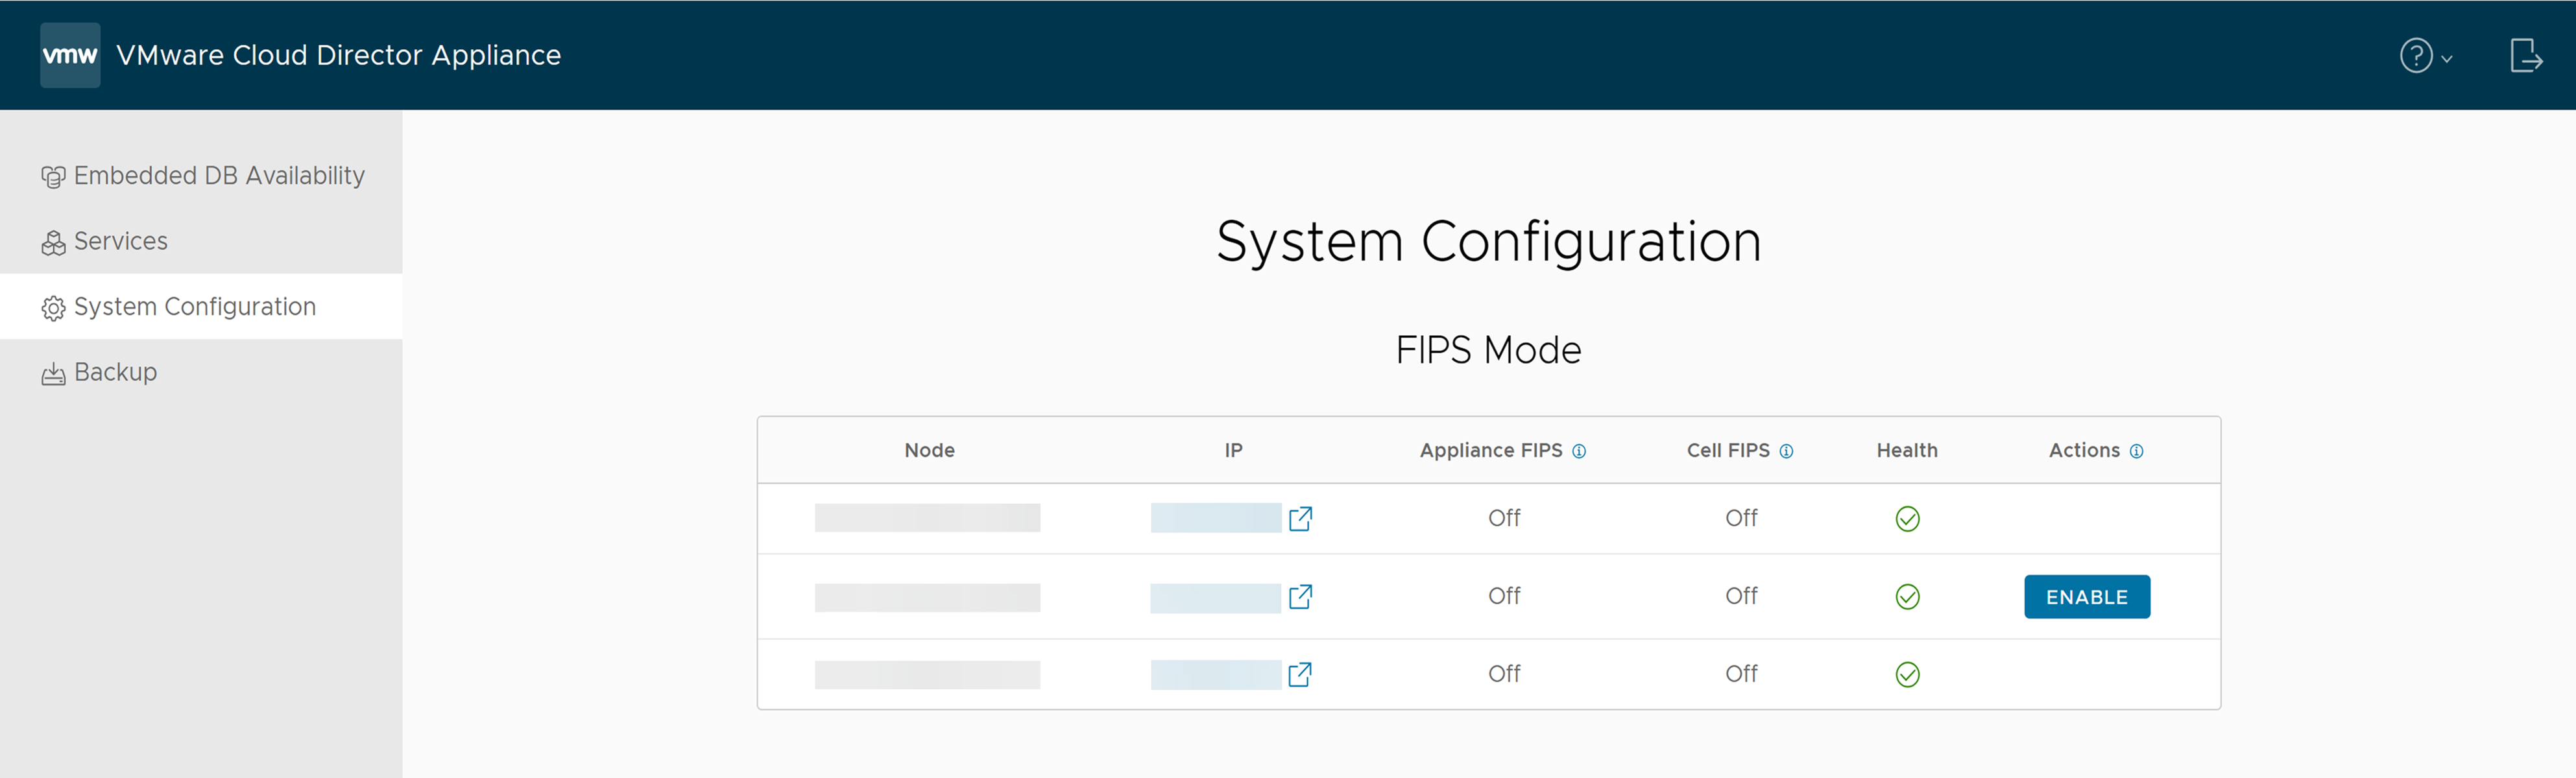 Na guia Configuração do Sistema da UI de gerenciamento de dispositivos do VMware Cloud Director, você pode encontrar as informações sobre o modo FIPS.